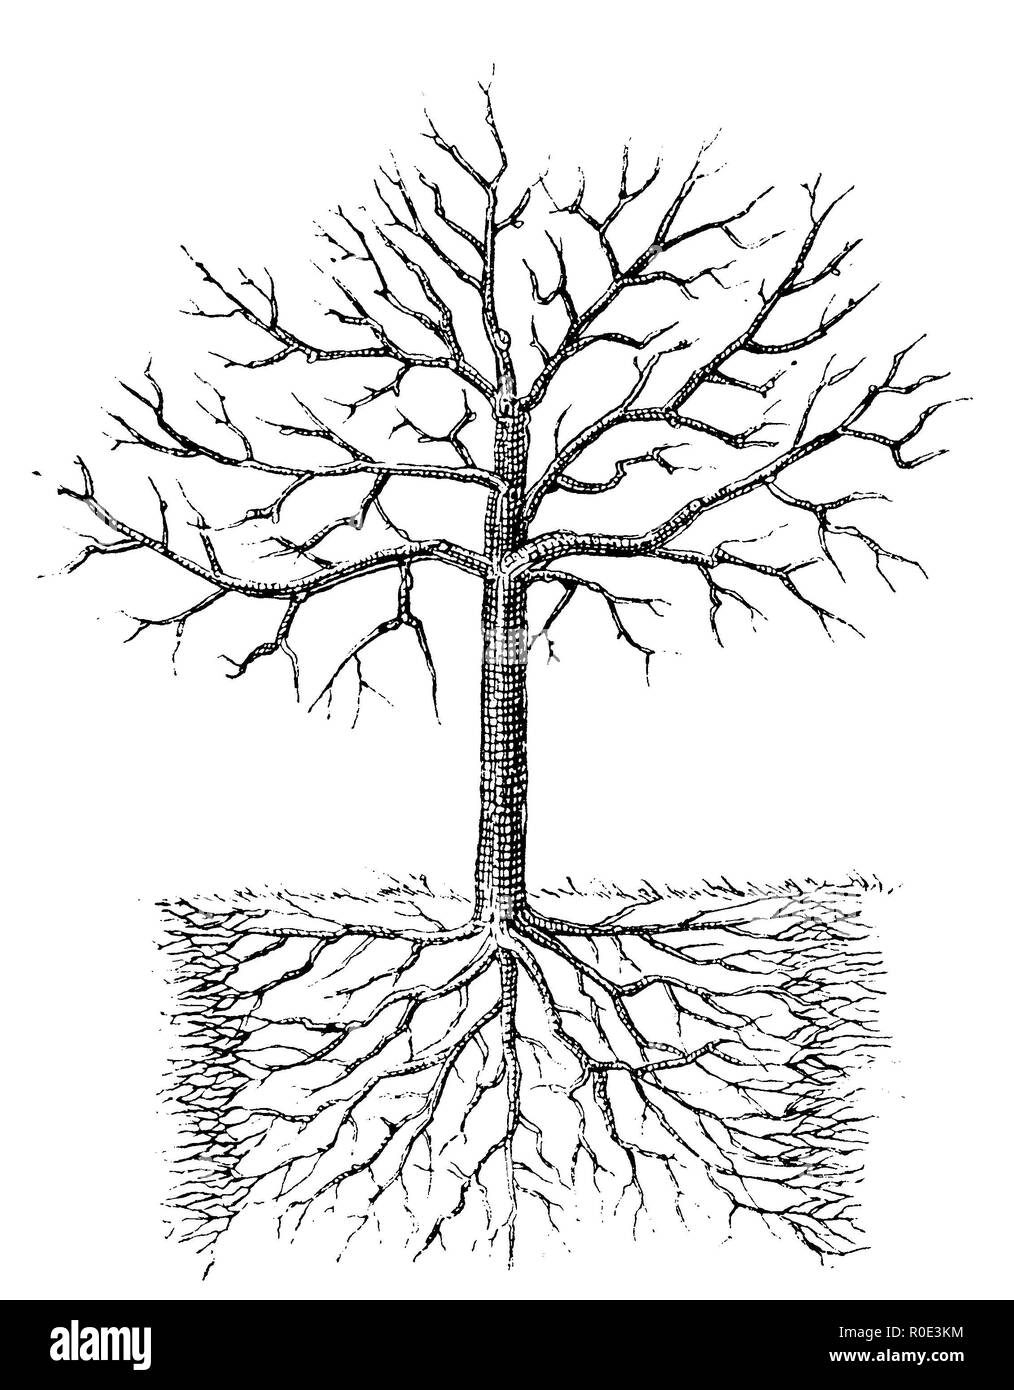 Wirkung der Bewurzelung und Nachdüngung auf älteren Obstbäumen, anonym 1911 Stockfoto